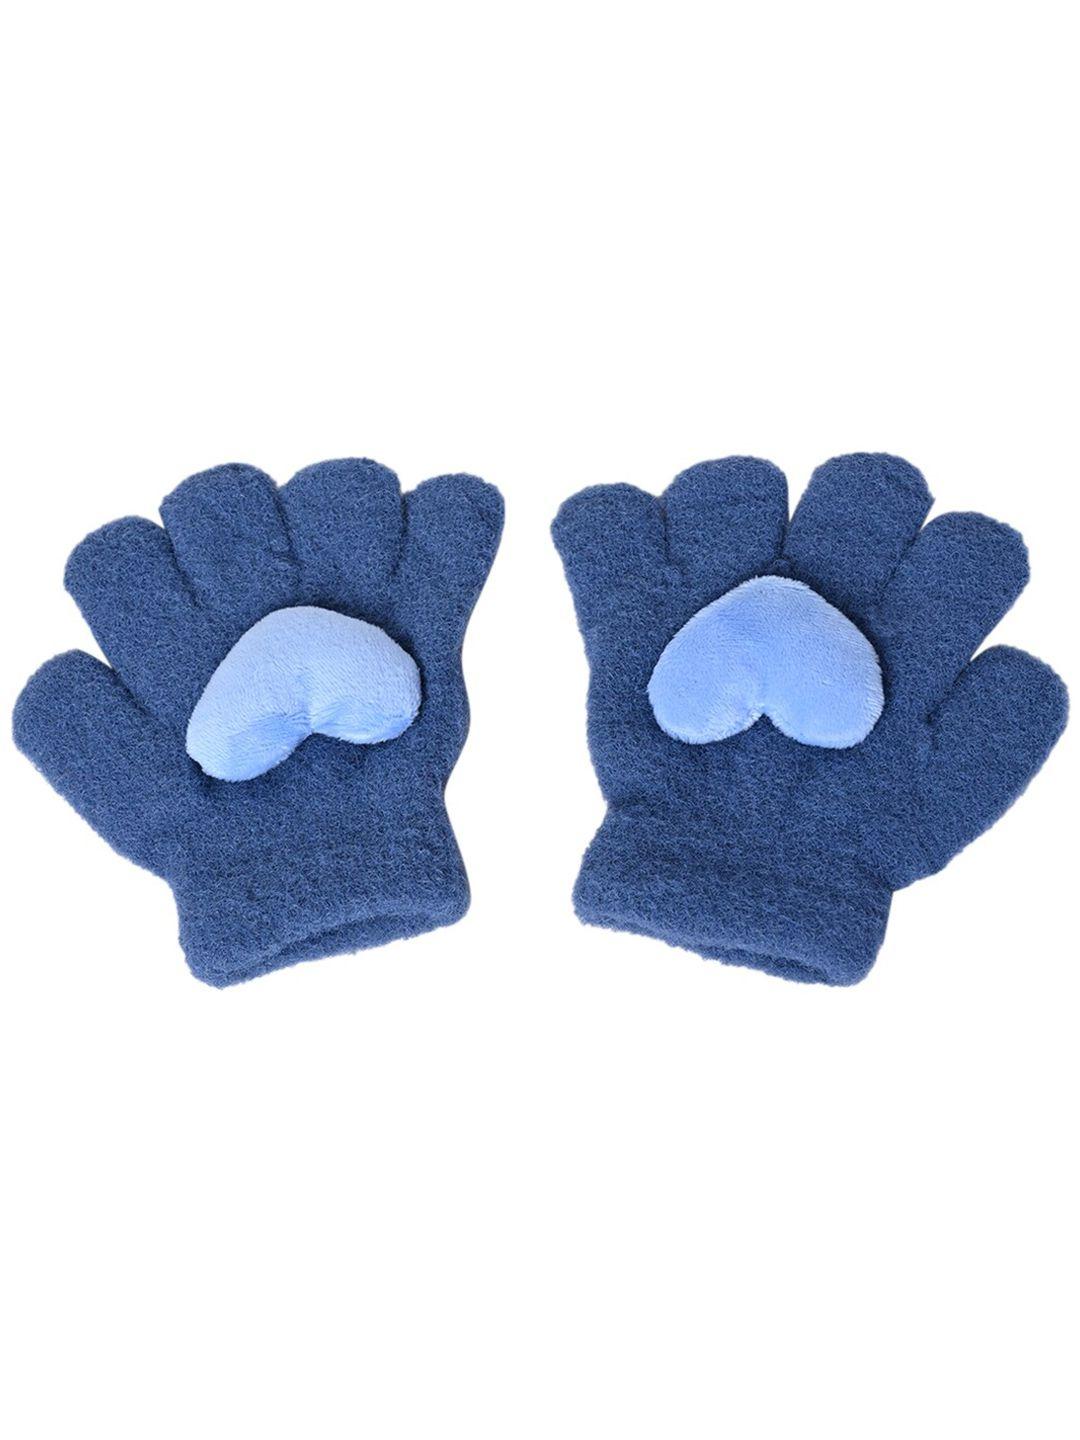 kid-o-world boys patterned woollen gloves